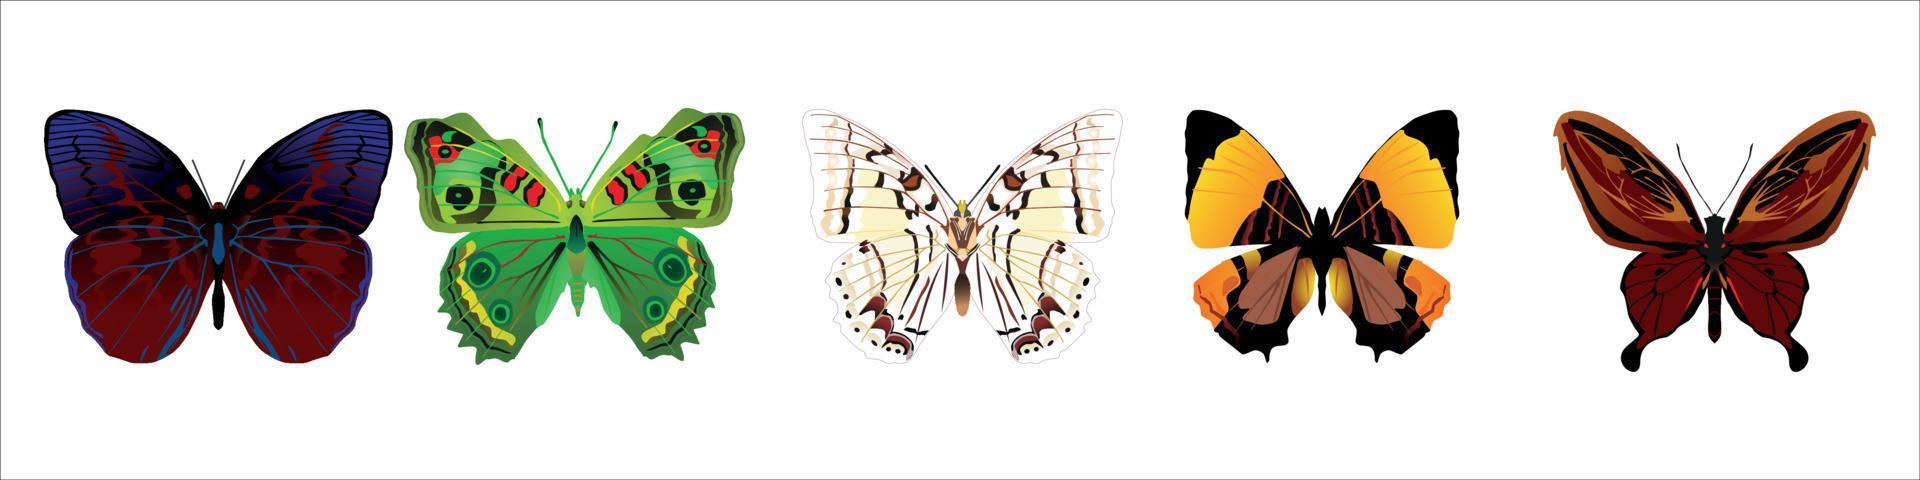 Reihe von bunten Cartoon-Schmetterlingen auf weißem Hintergrund. vektor